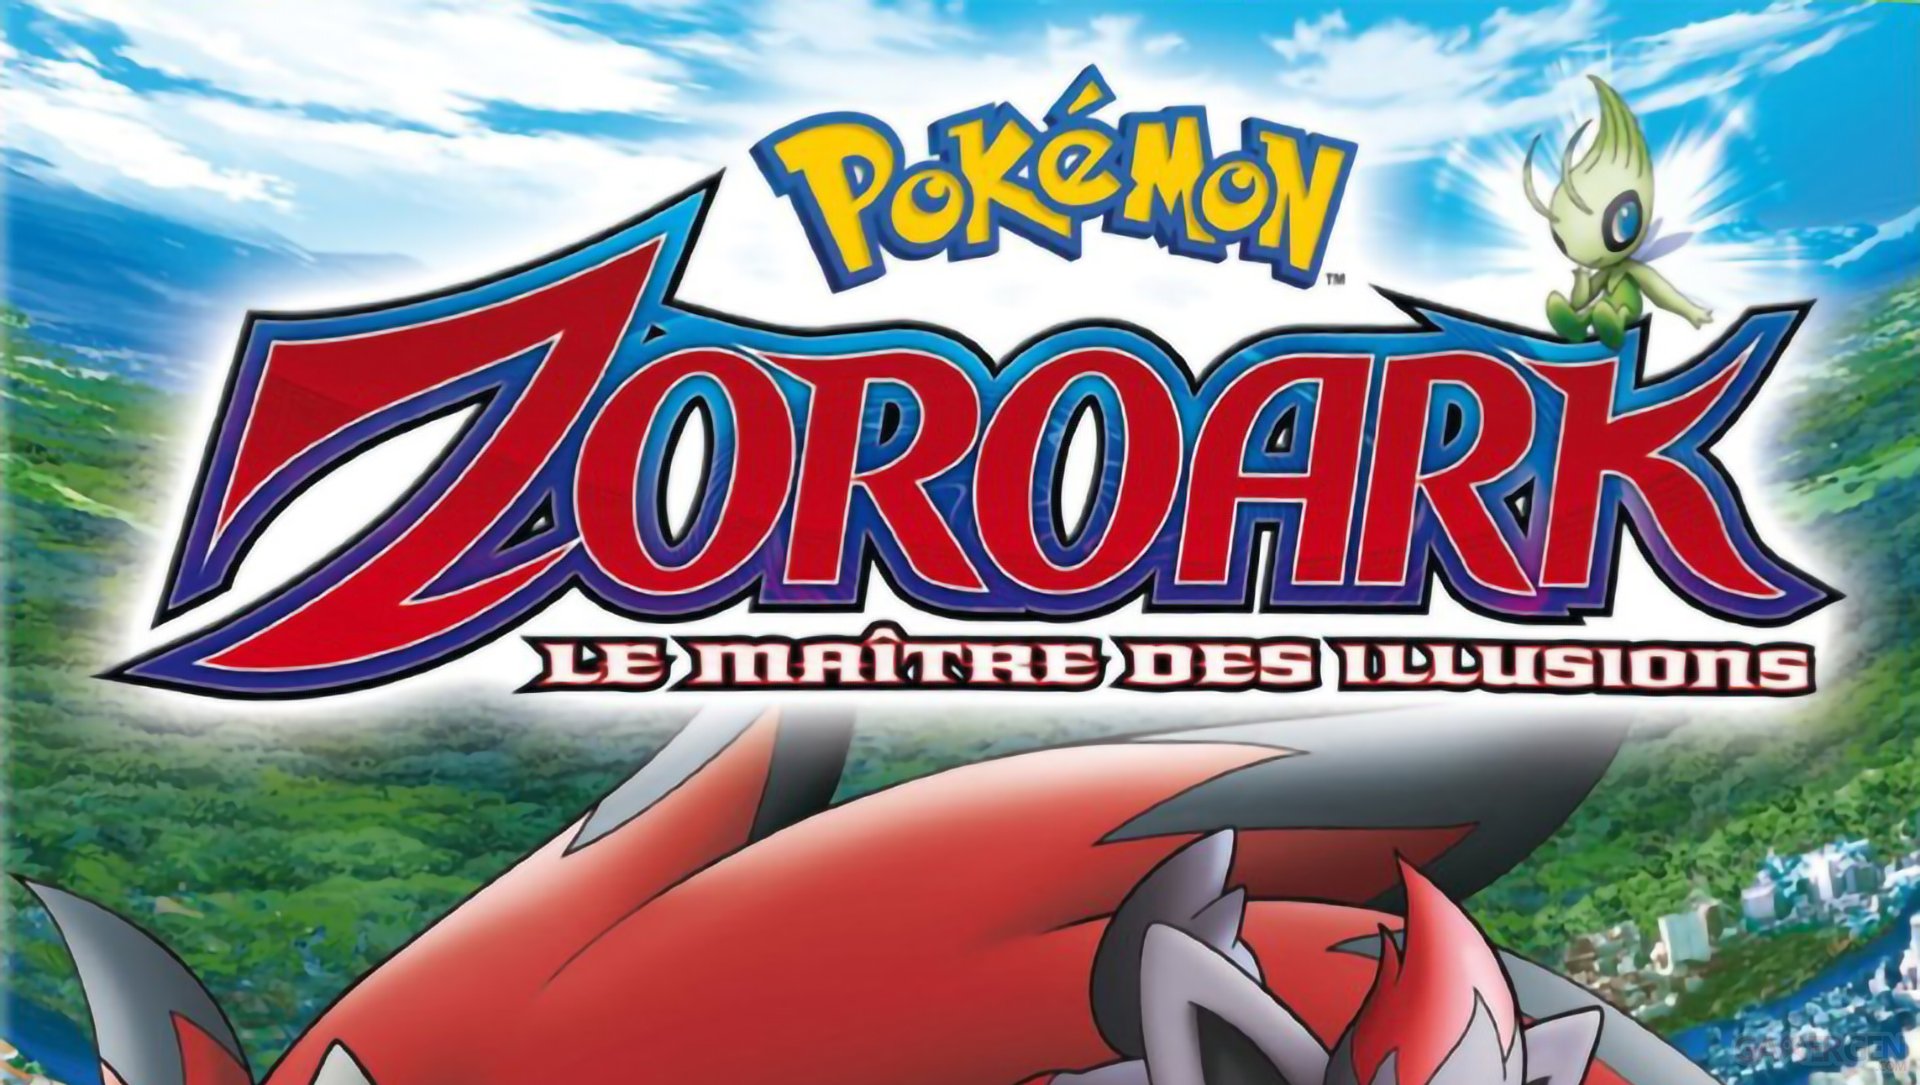 Pokémon : Zoroark, Le Maître des Illusions visible gratuitement